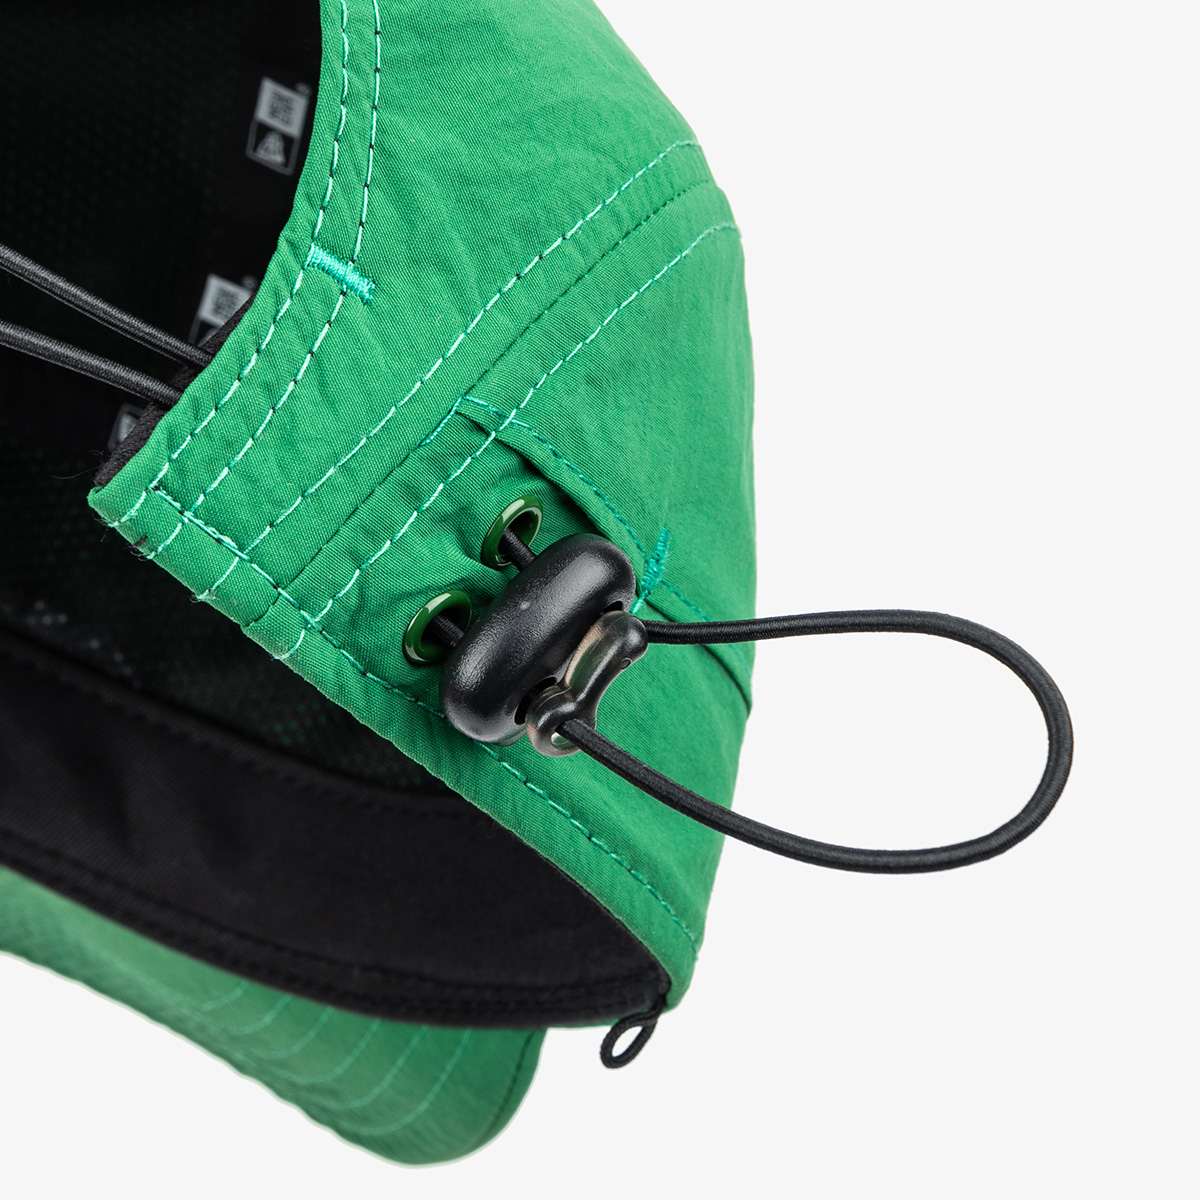 New Era Green Packable Camper Cap